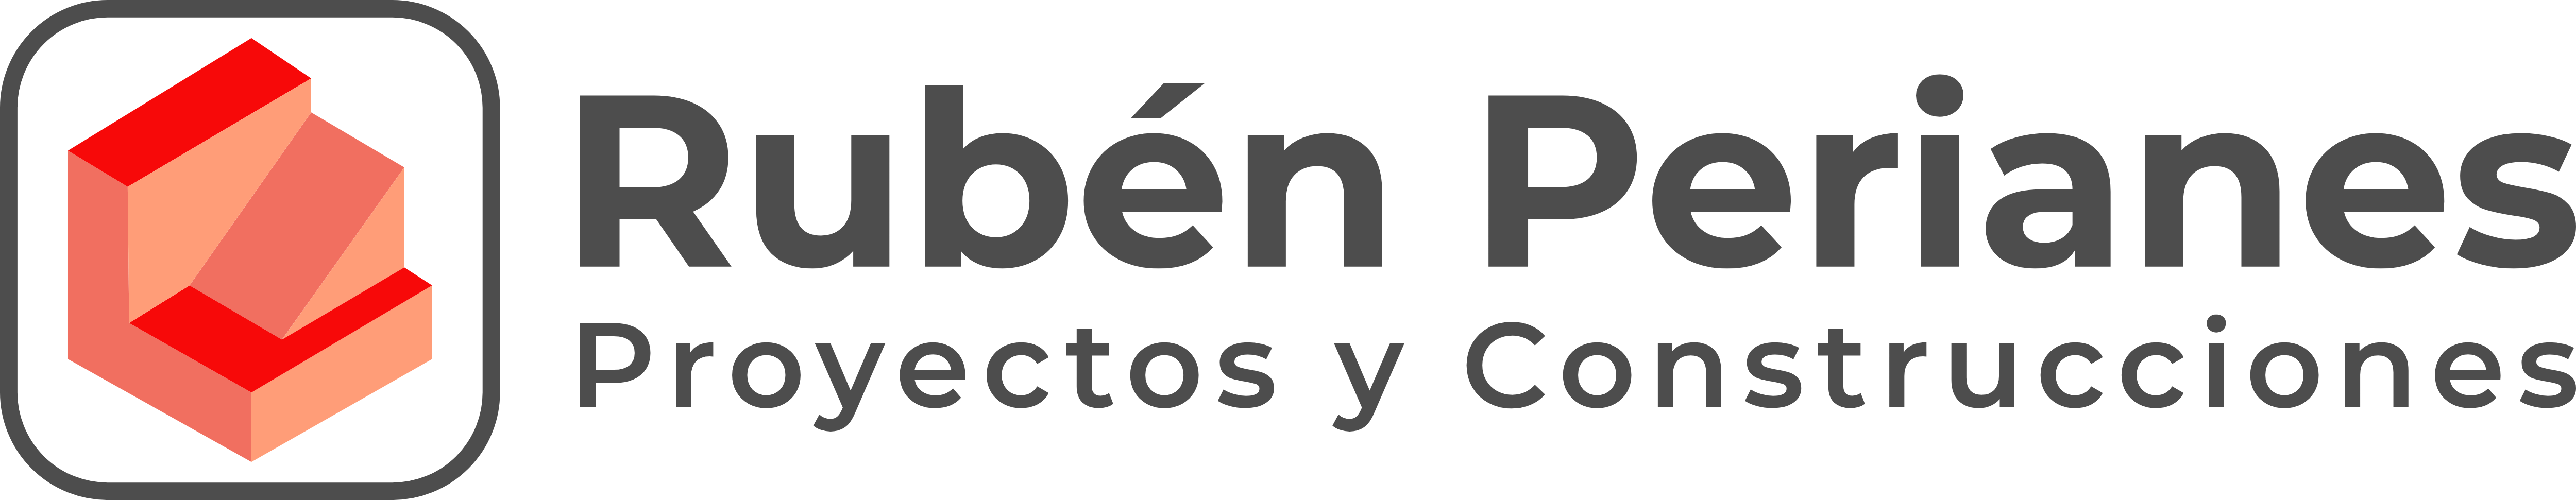 Rubén Perianes Proyectos y Construcciones